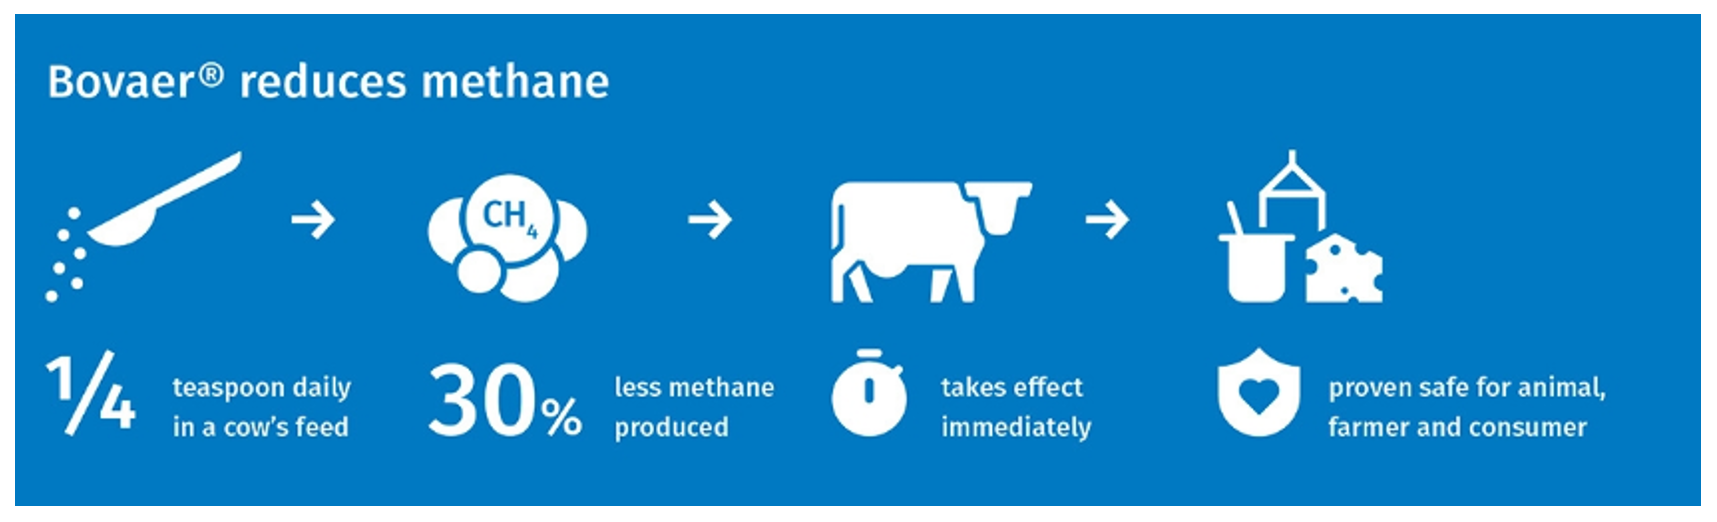 Bovaer reduces methane